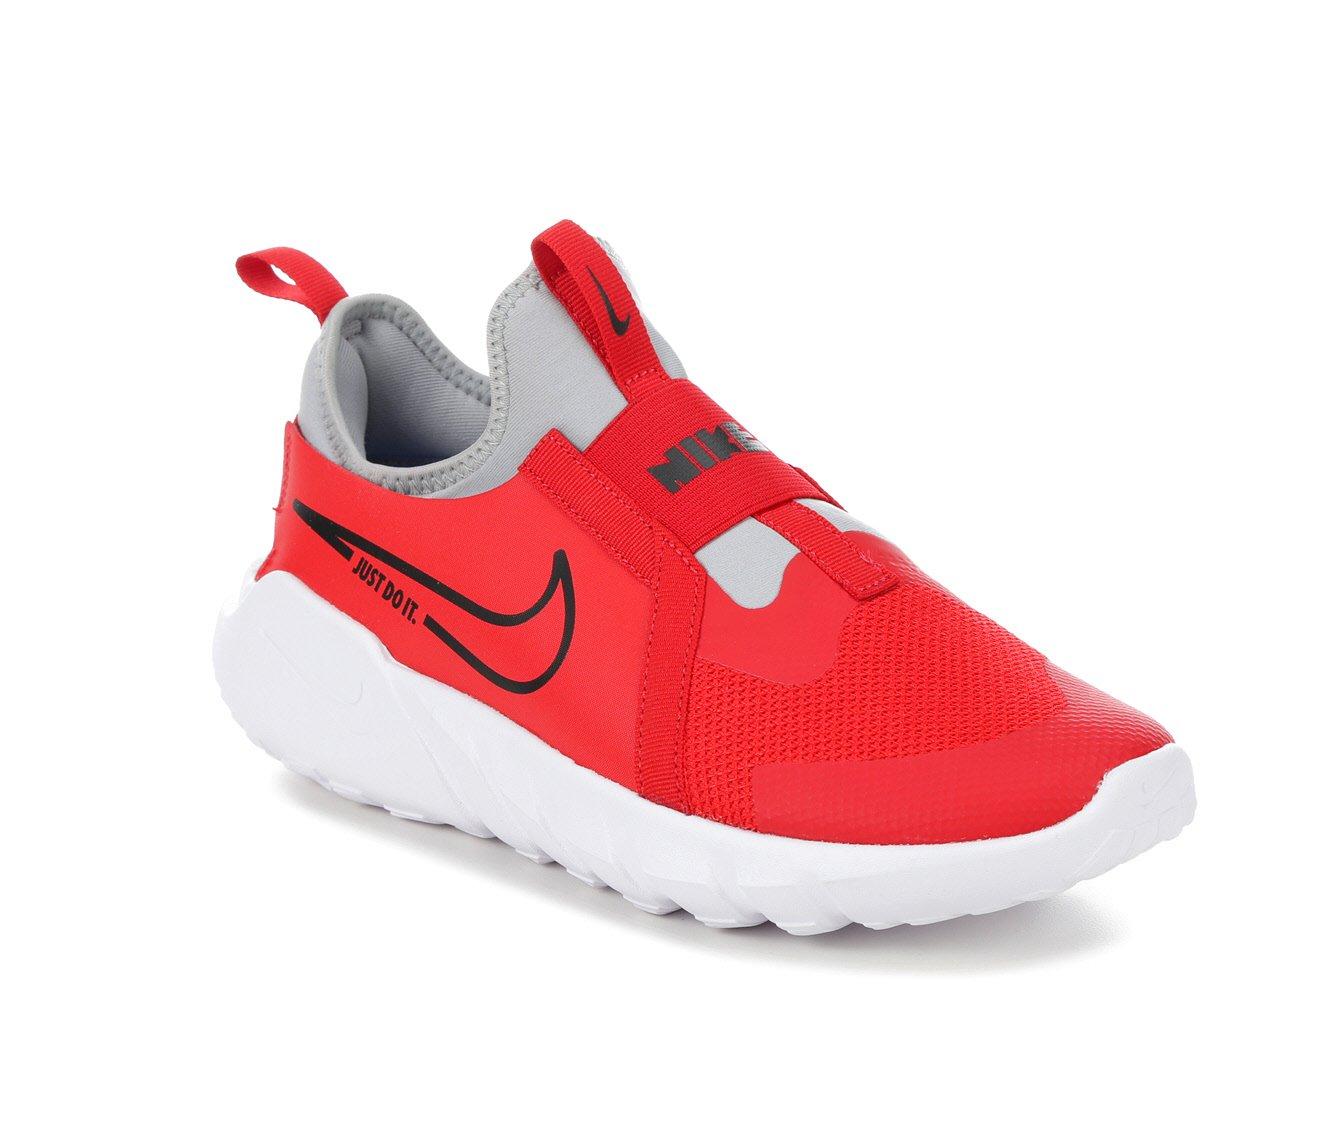 Red Nike Boys Big Kid Flex Runner 2 Slip On Sneaker, Kids